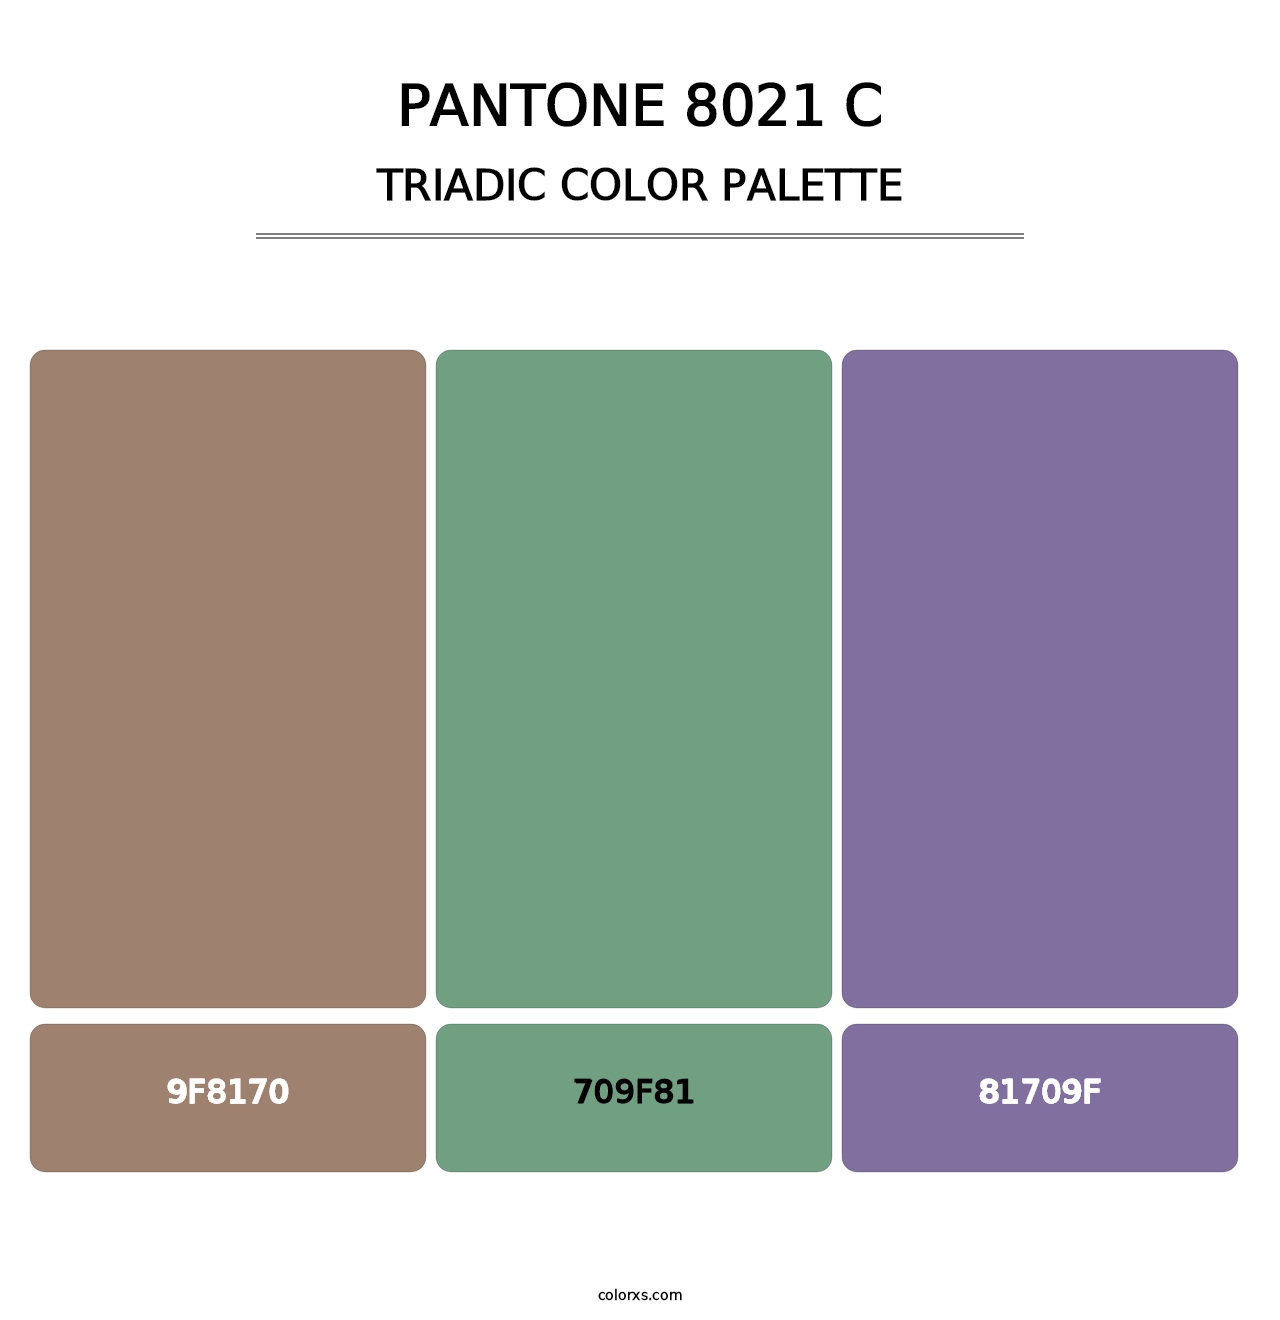 PANTONE 8021 C - Triadic Color Palette